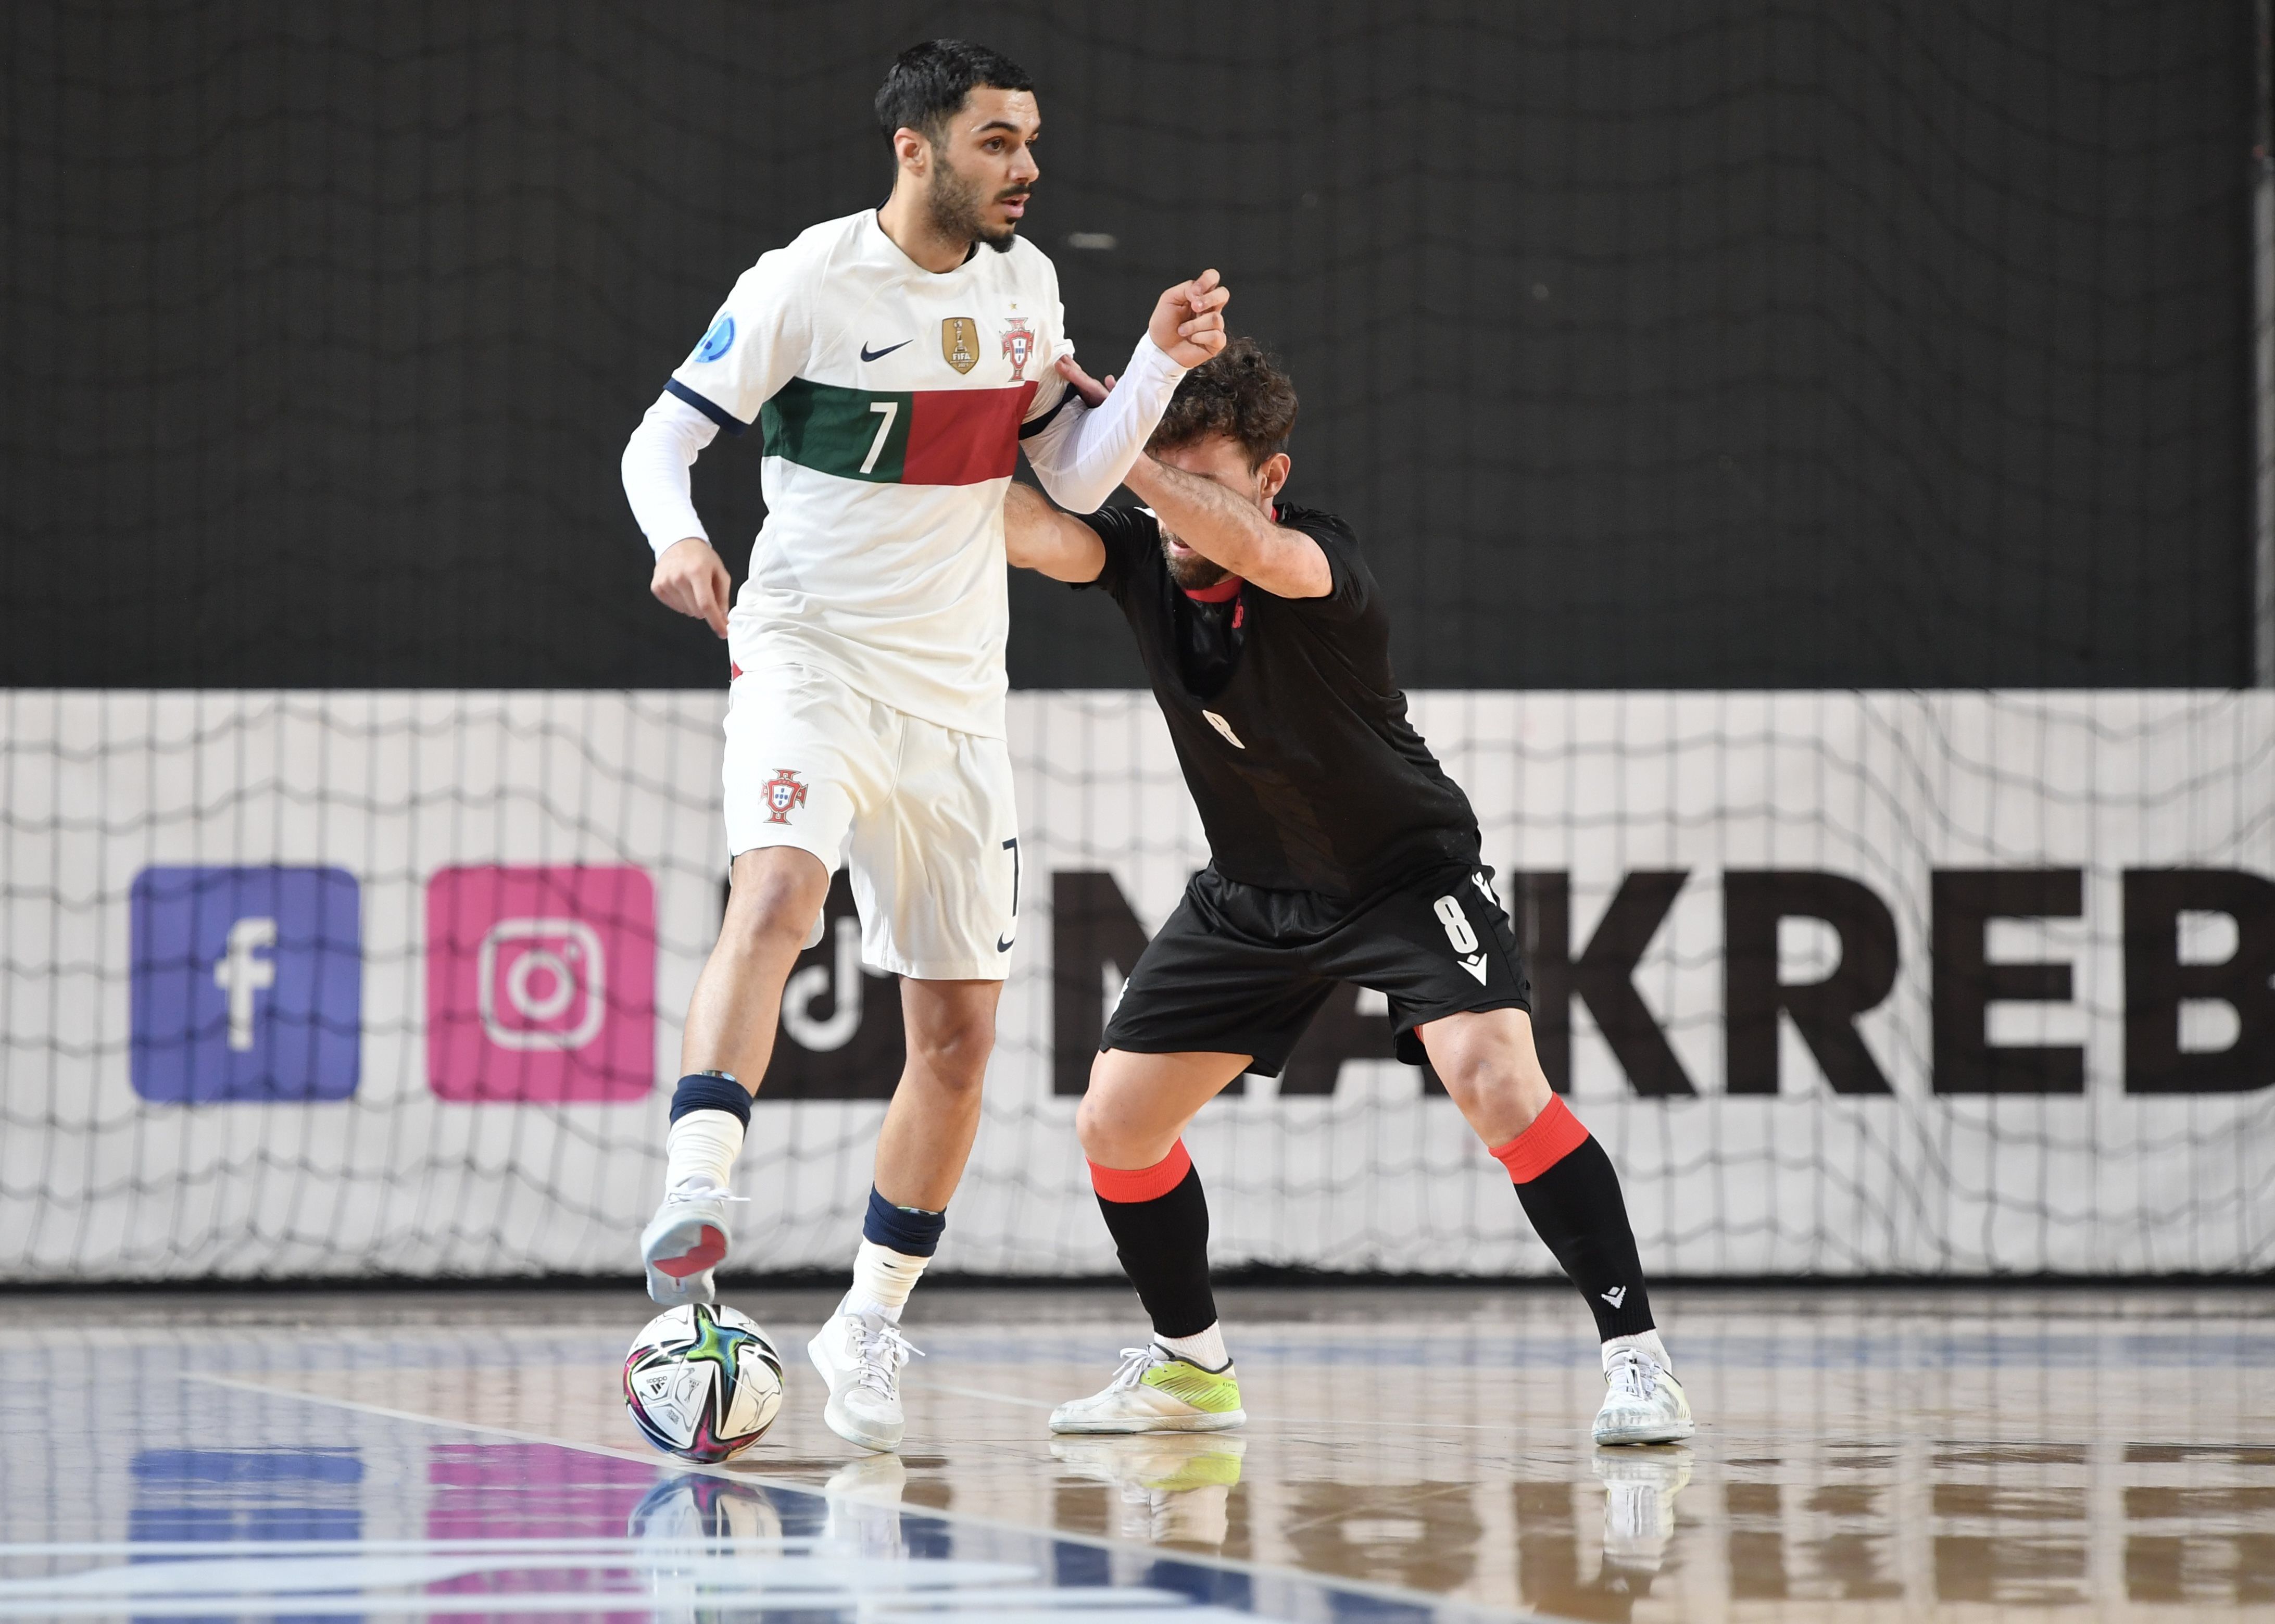 Três jogadores do Sporting entre os nomeados para Melhor Jogador do Mundo  de Futsal de 2021 - Futsal - SAPO Desporto